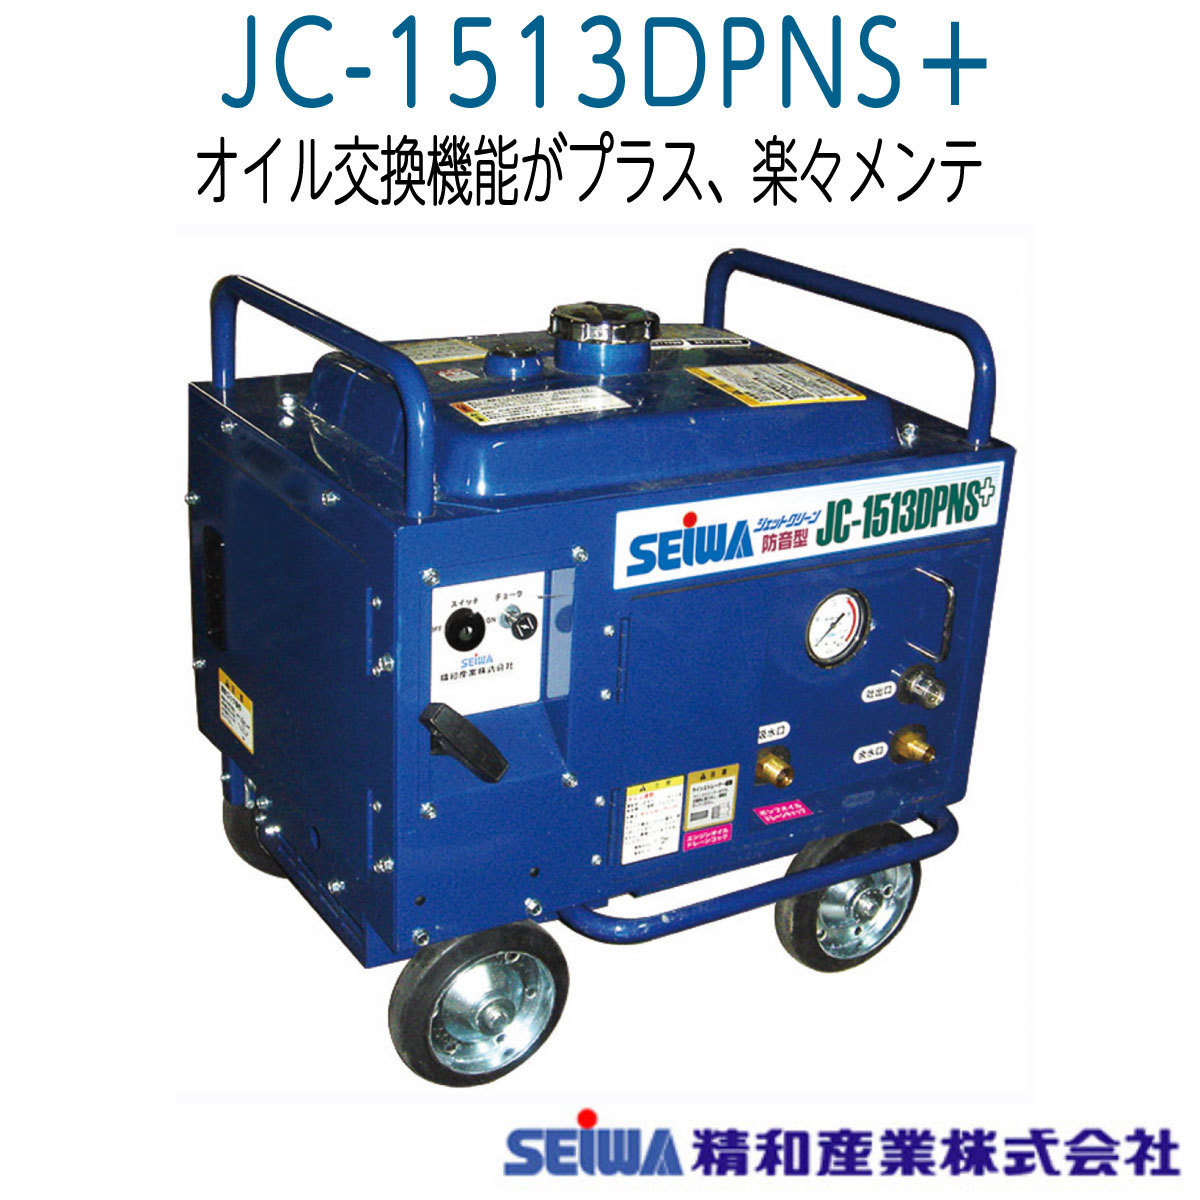 精和産業　JC-1513DPNS+　エンジン防音型高圧洗浄機　本体《メーカー直送品》